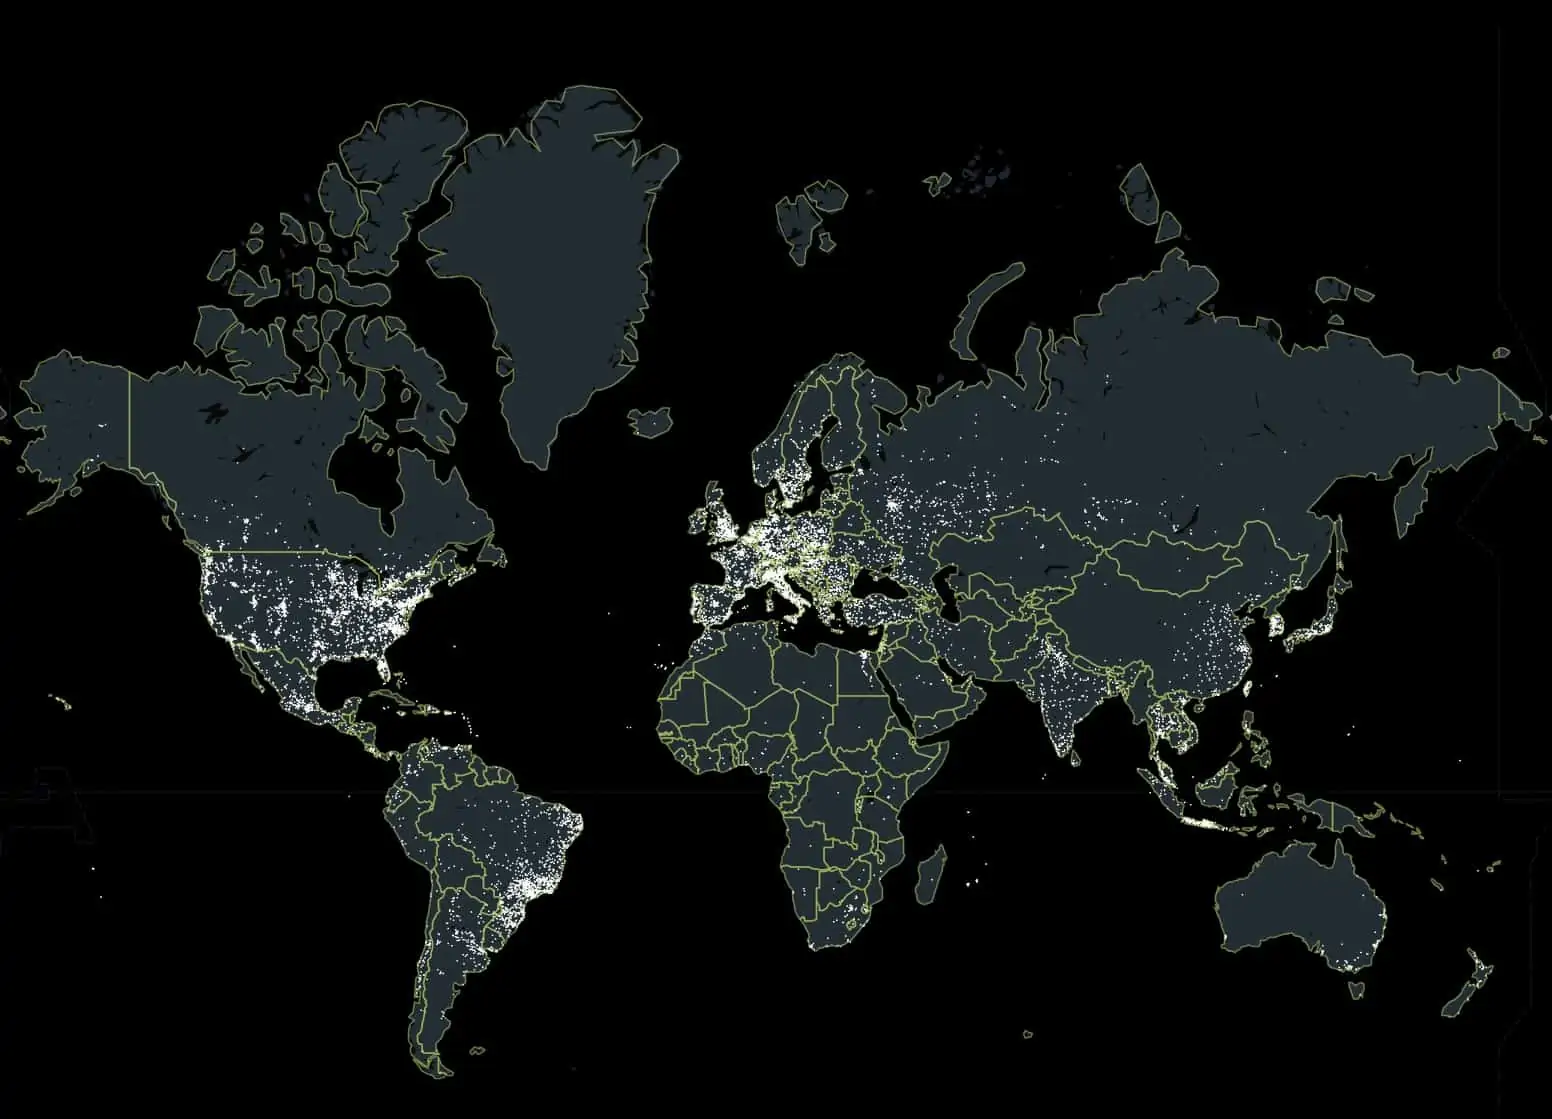 DDoS weapons by region